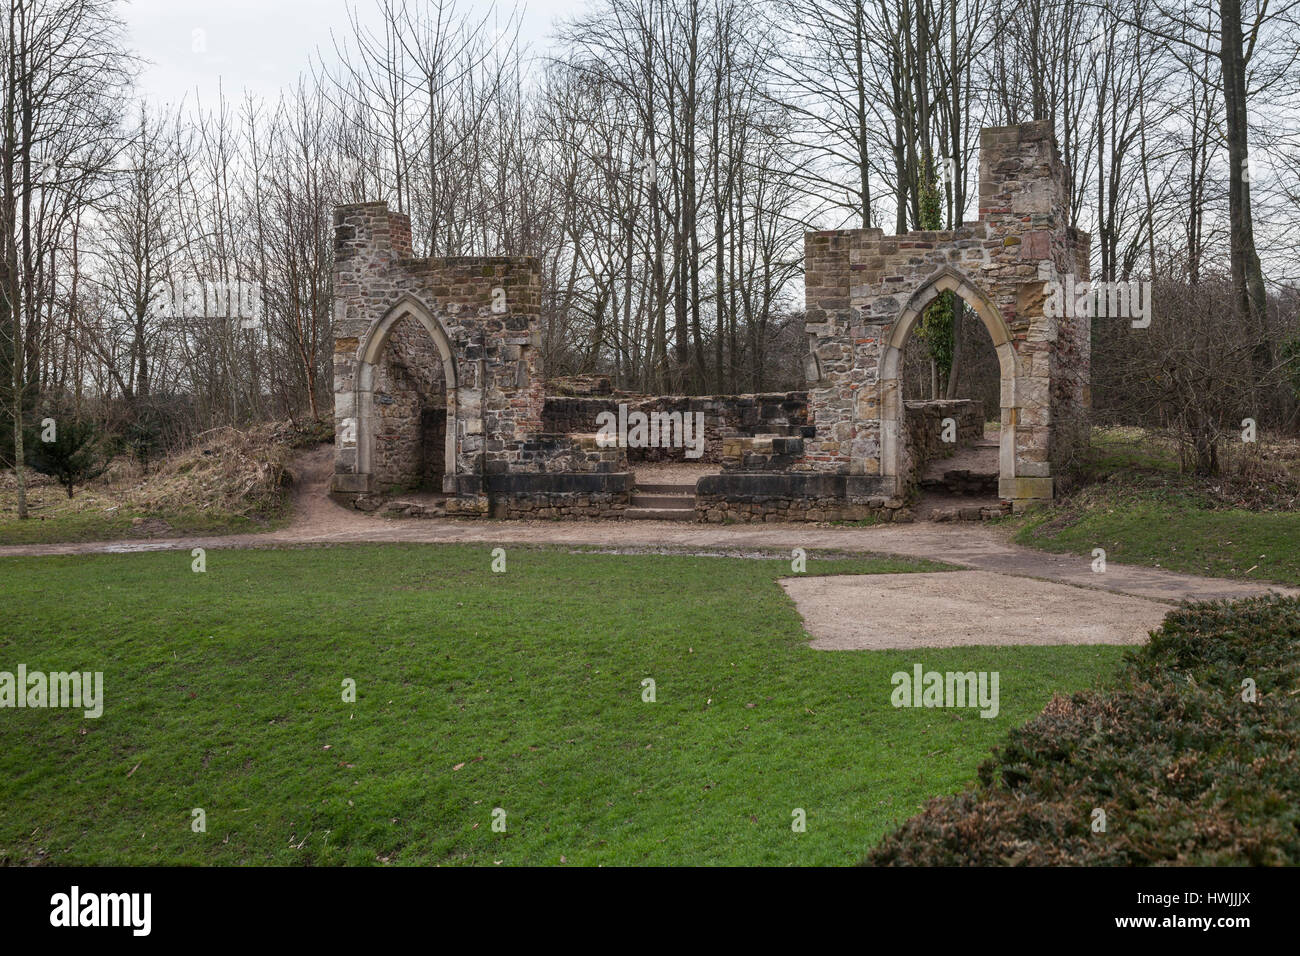 Le style gothique Bobo ruine à Retiro Hardwick Park,Sedgefield Durham,Angleterre,fr Banque D'Images